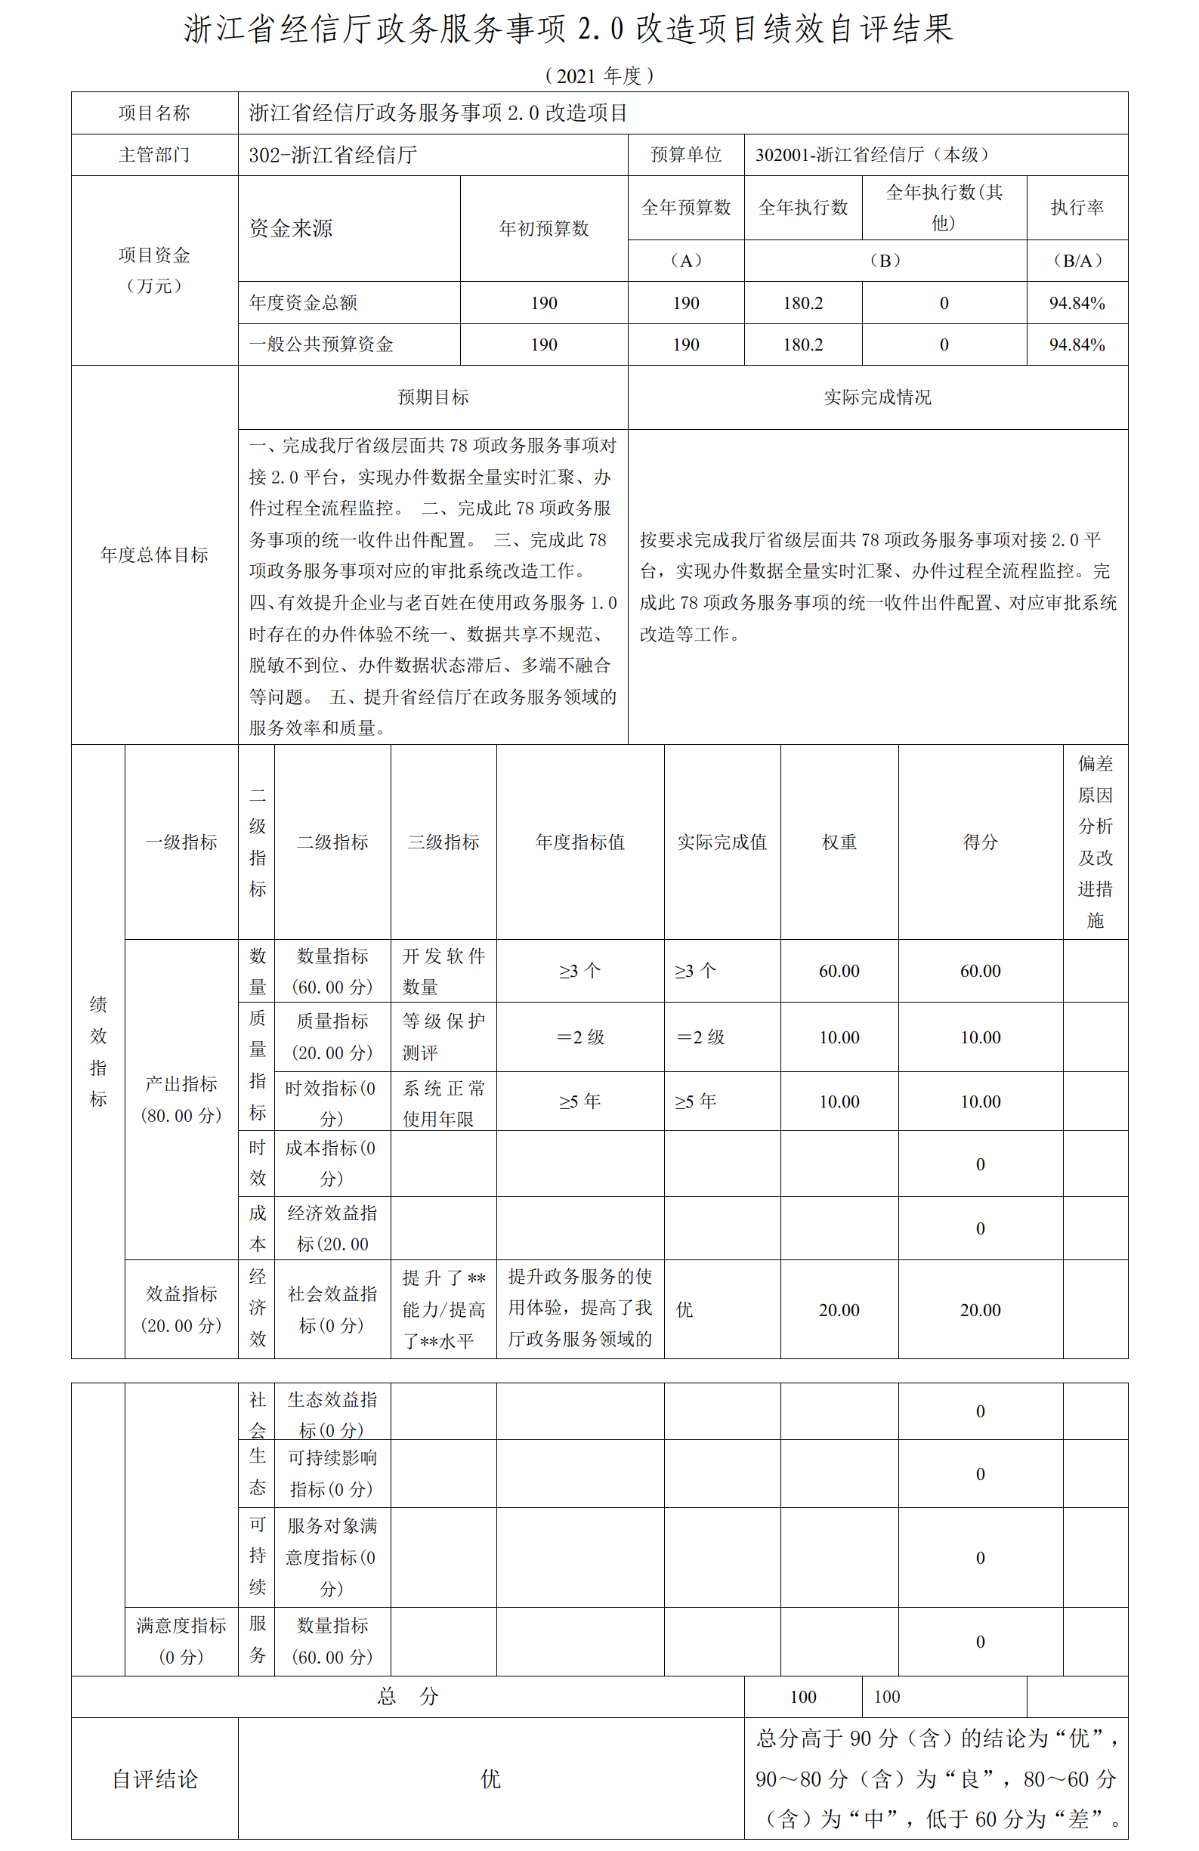 浙江省经信厅政务服务事项2.0改造项目绩效自评结果.png